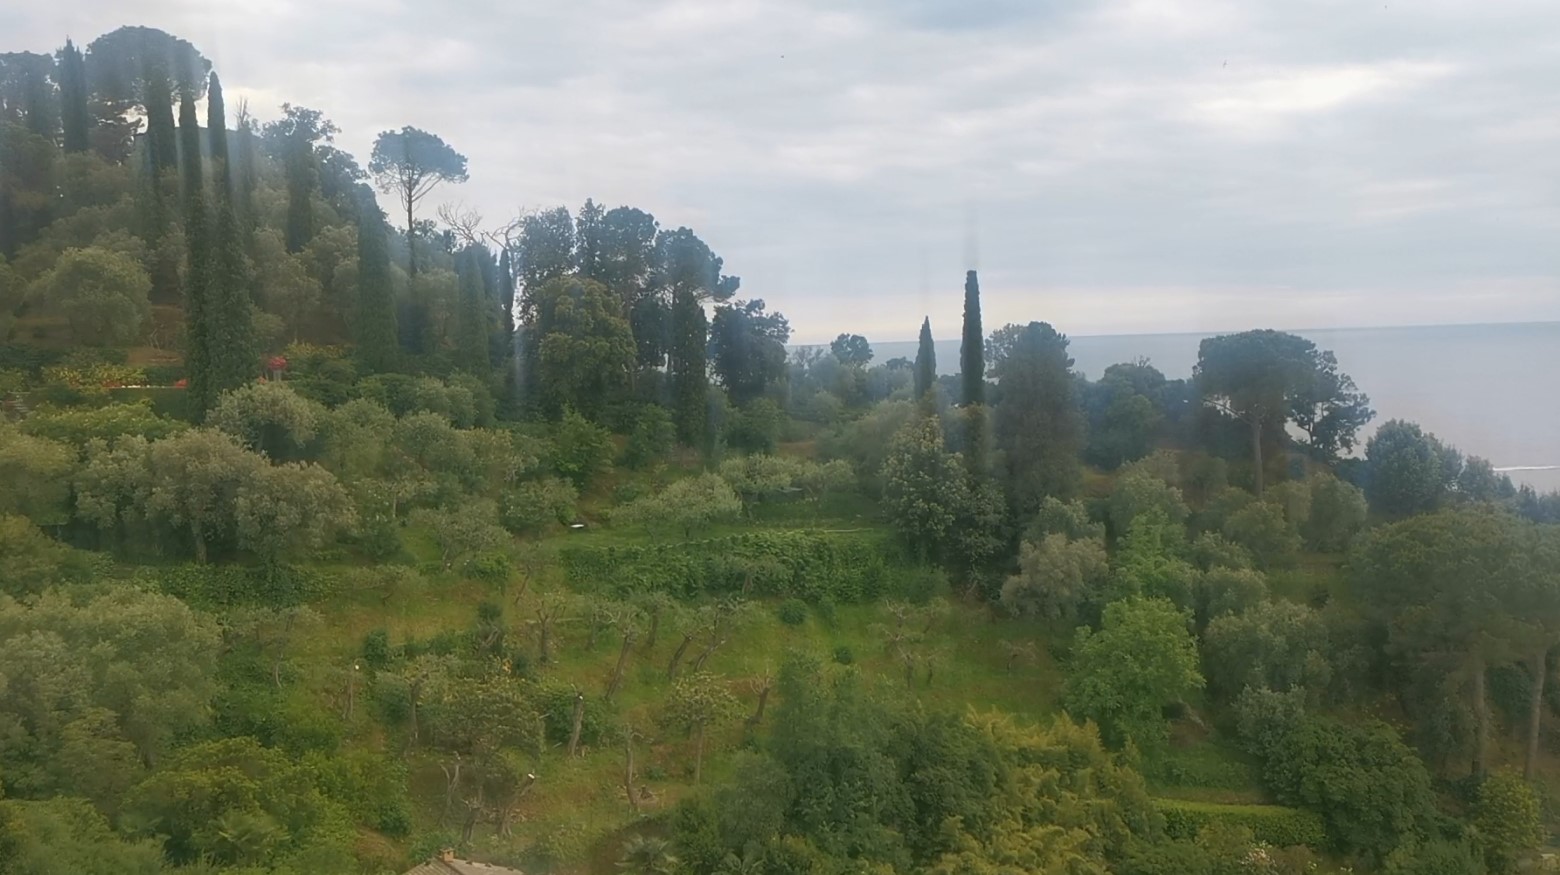 Parco di Portofino, l'appello dei sindaci: "No alle escursioni improvvisate"